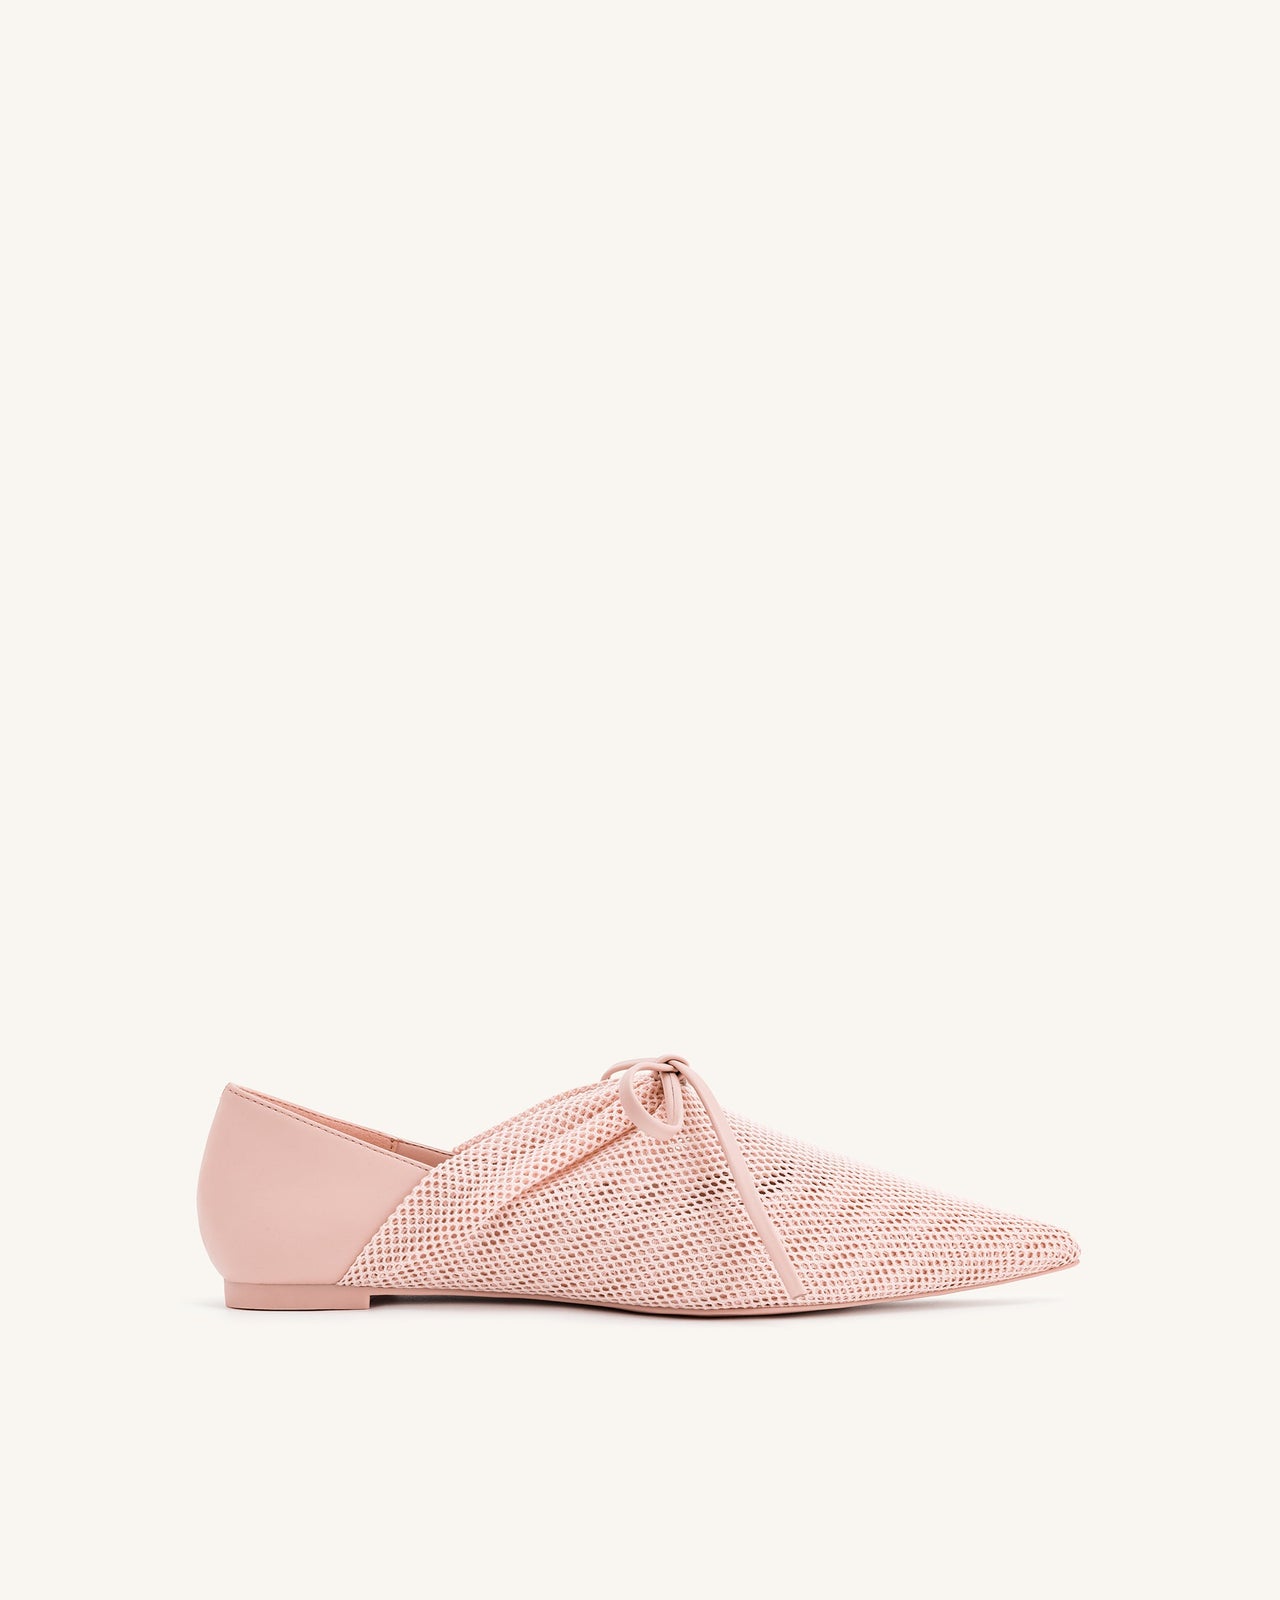 Reilly Fishnet Ballerina Flats - Pink Beige